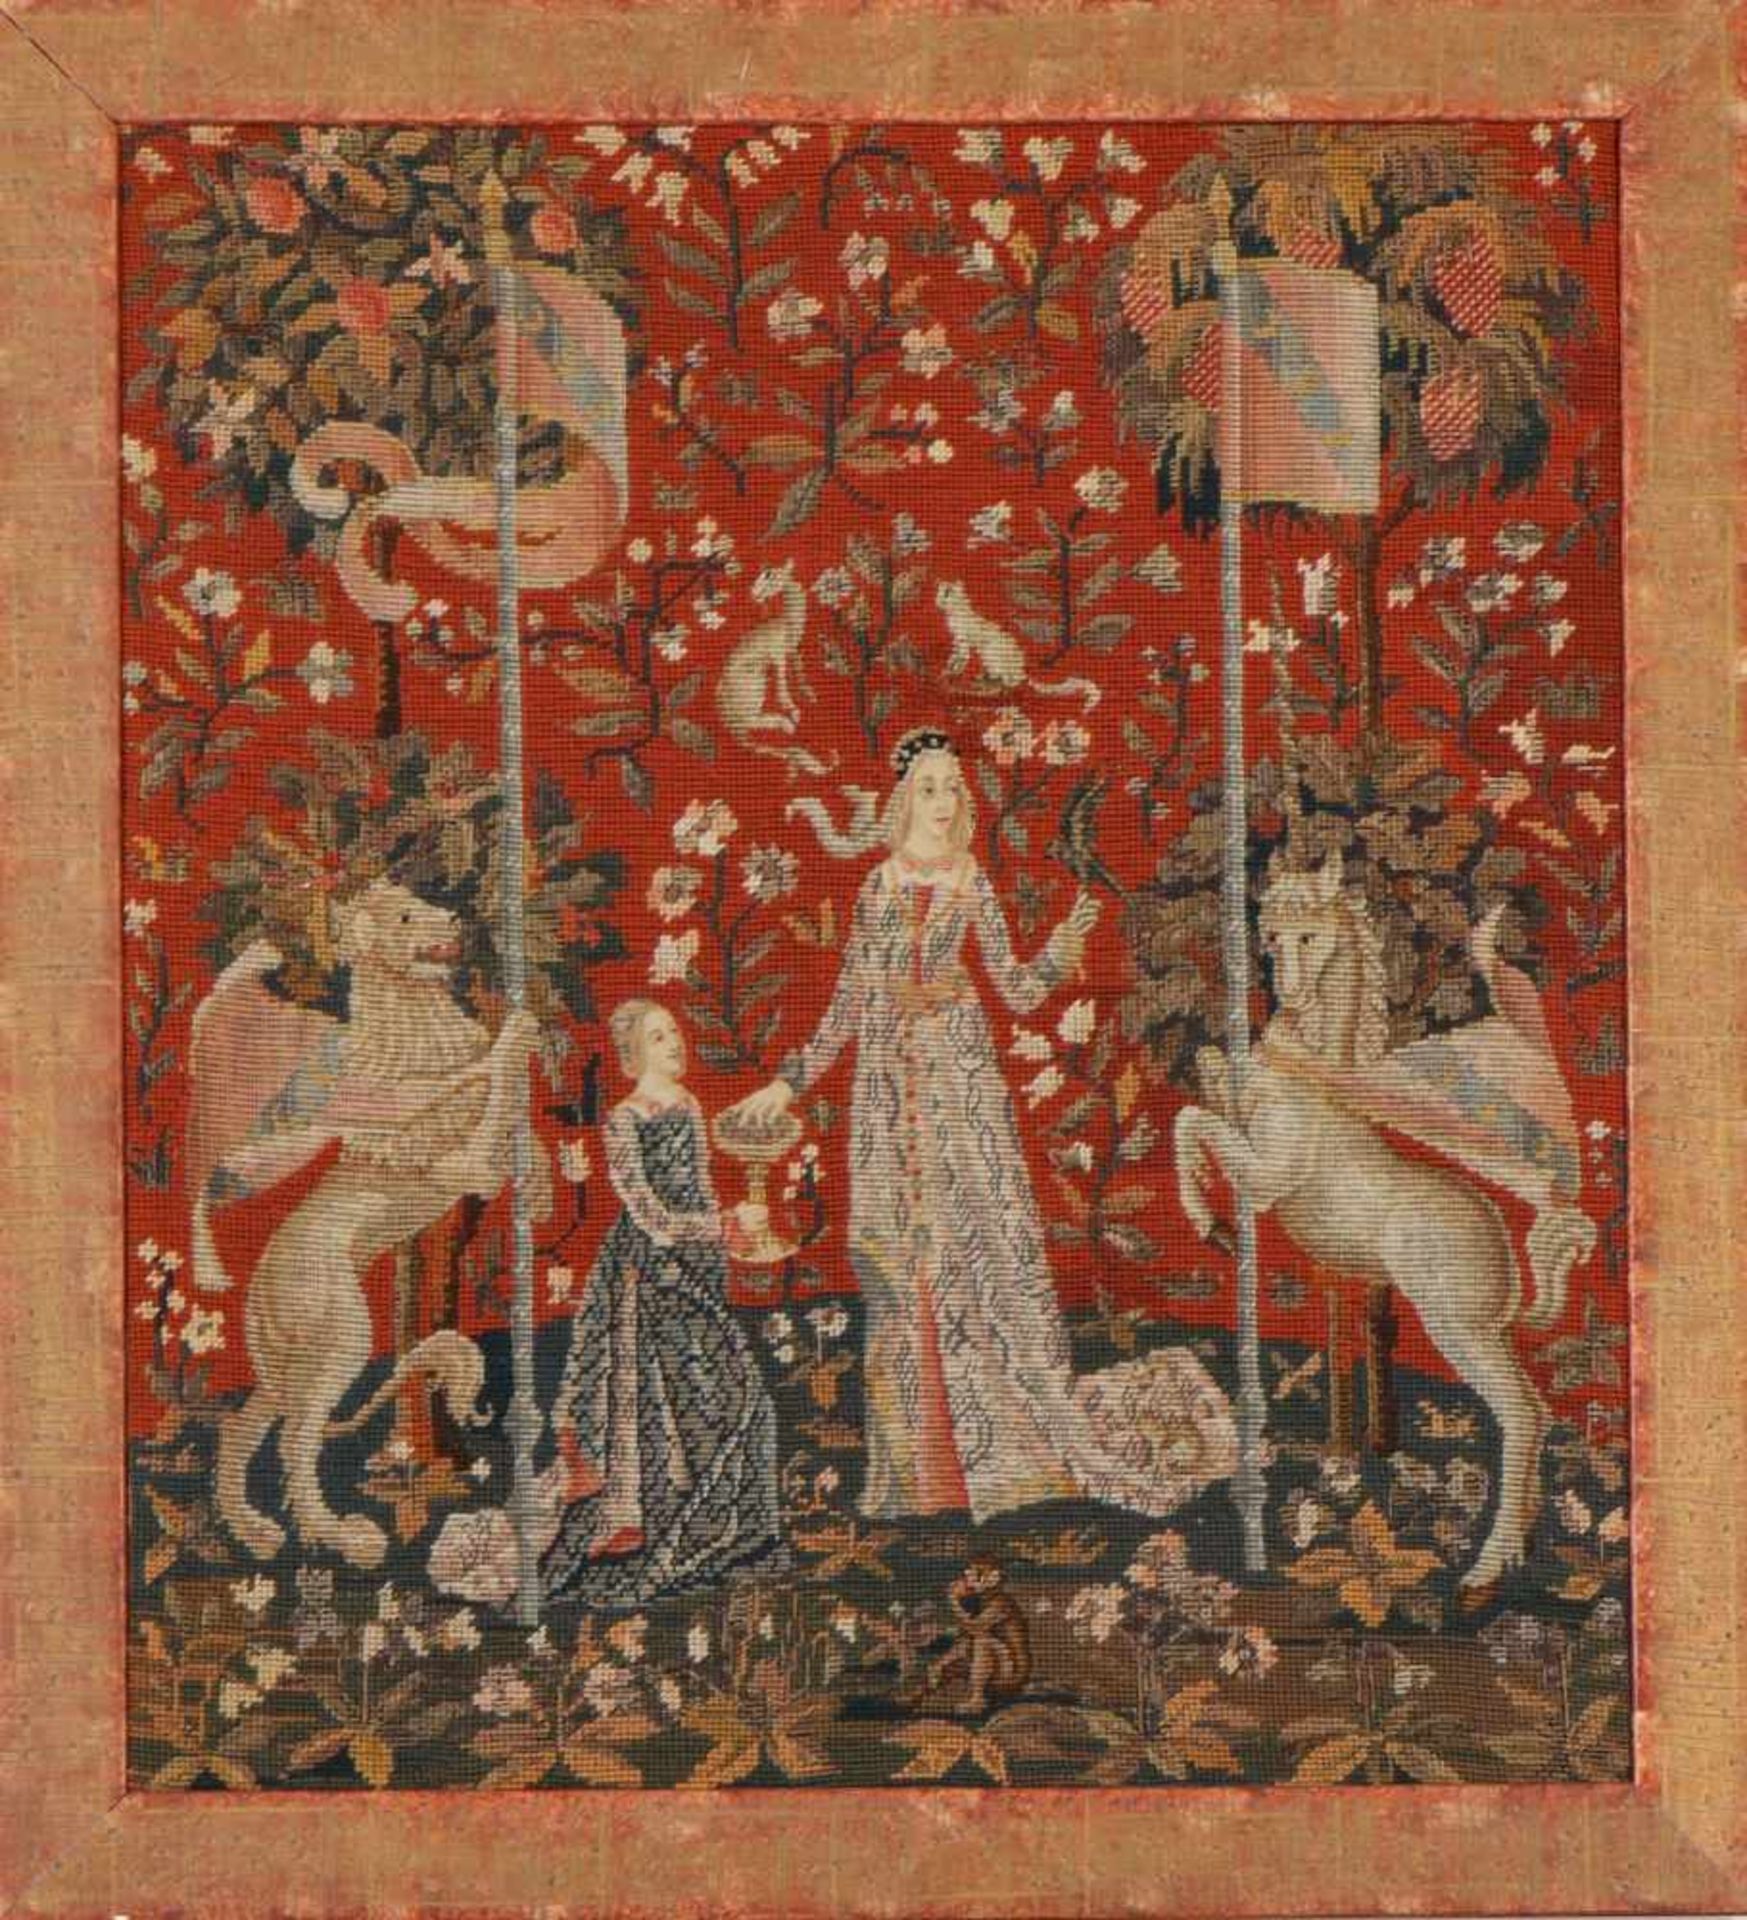 Tapisserie ¨The Lady and the Unicorn¨nach antikem Pariser Vorbild (Entwurf um 1500), Ausführung wohl